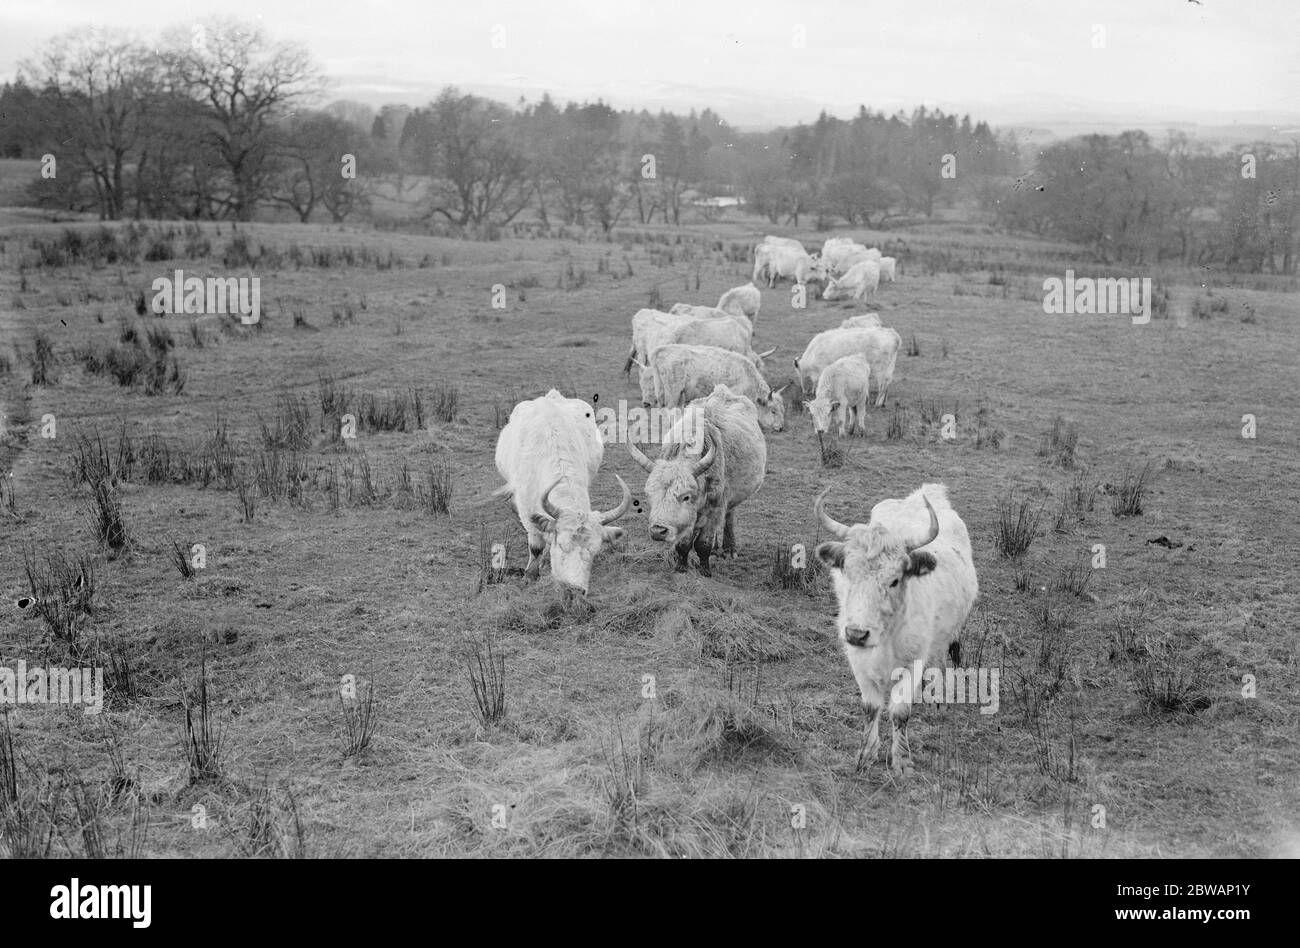 Chilingham Cattle eine Rasse von Rindern, die in Chilingham Castle, Northumberland, England leben. Diese seltene Rasse besteht aus etwa 90 Tieren in Chilingham, die einen sehr großen Park bewohnen, der seit dem Mittelalter existiert. Die Herde ist seit Hunderten von Jahren bemerkenswert genetisch isoliert geblieben und überlebte trotz der Inzucht Depression aufgrund der geringen Population Stockfoto